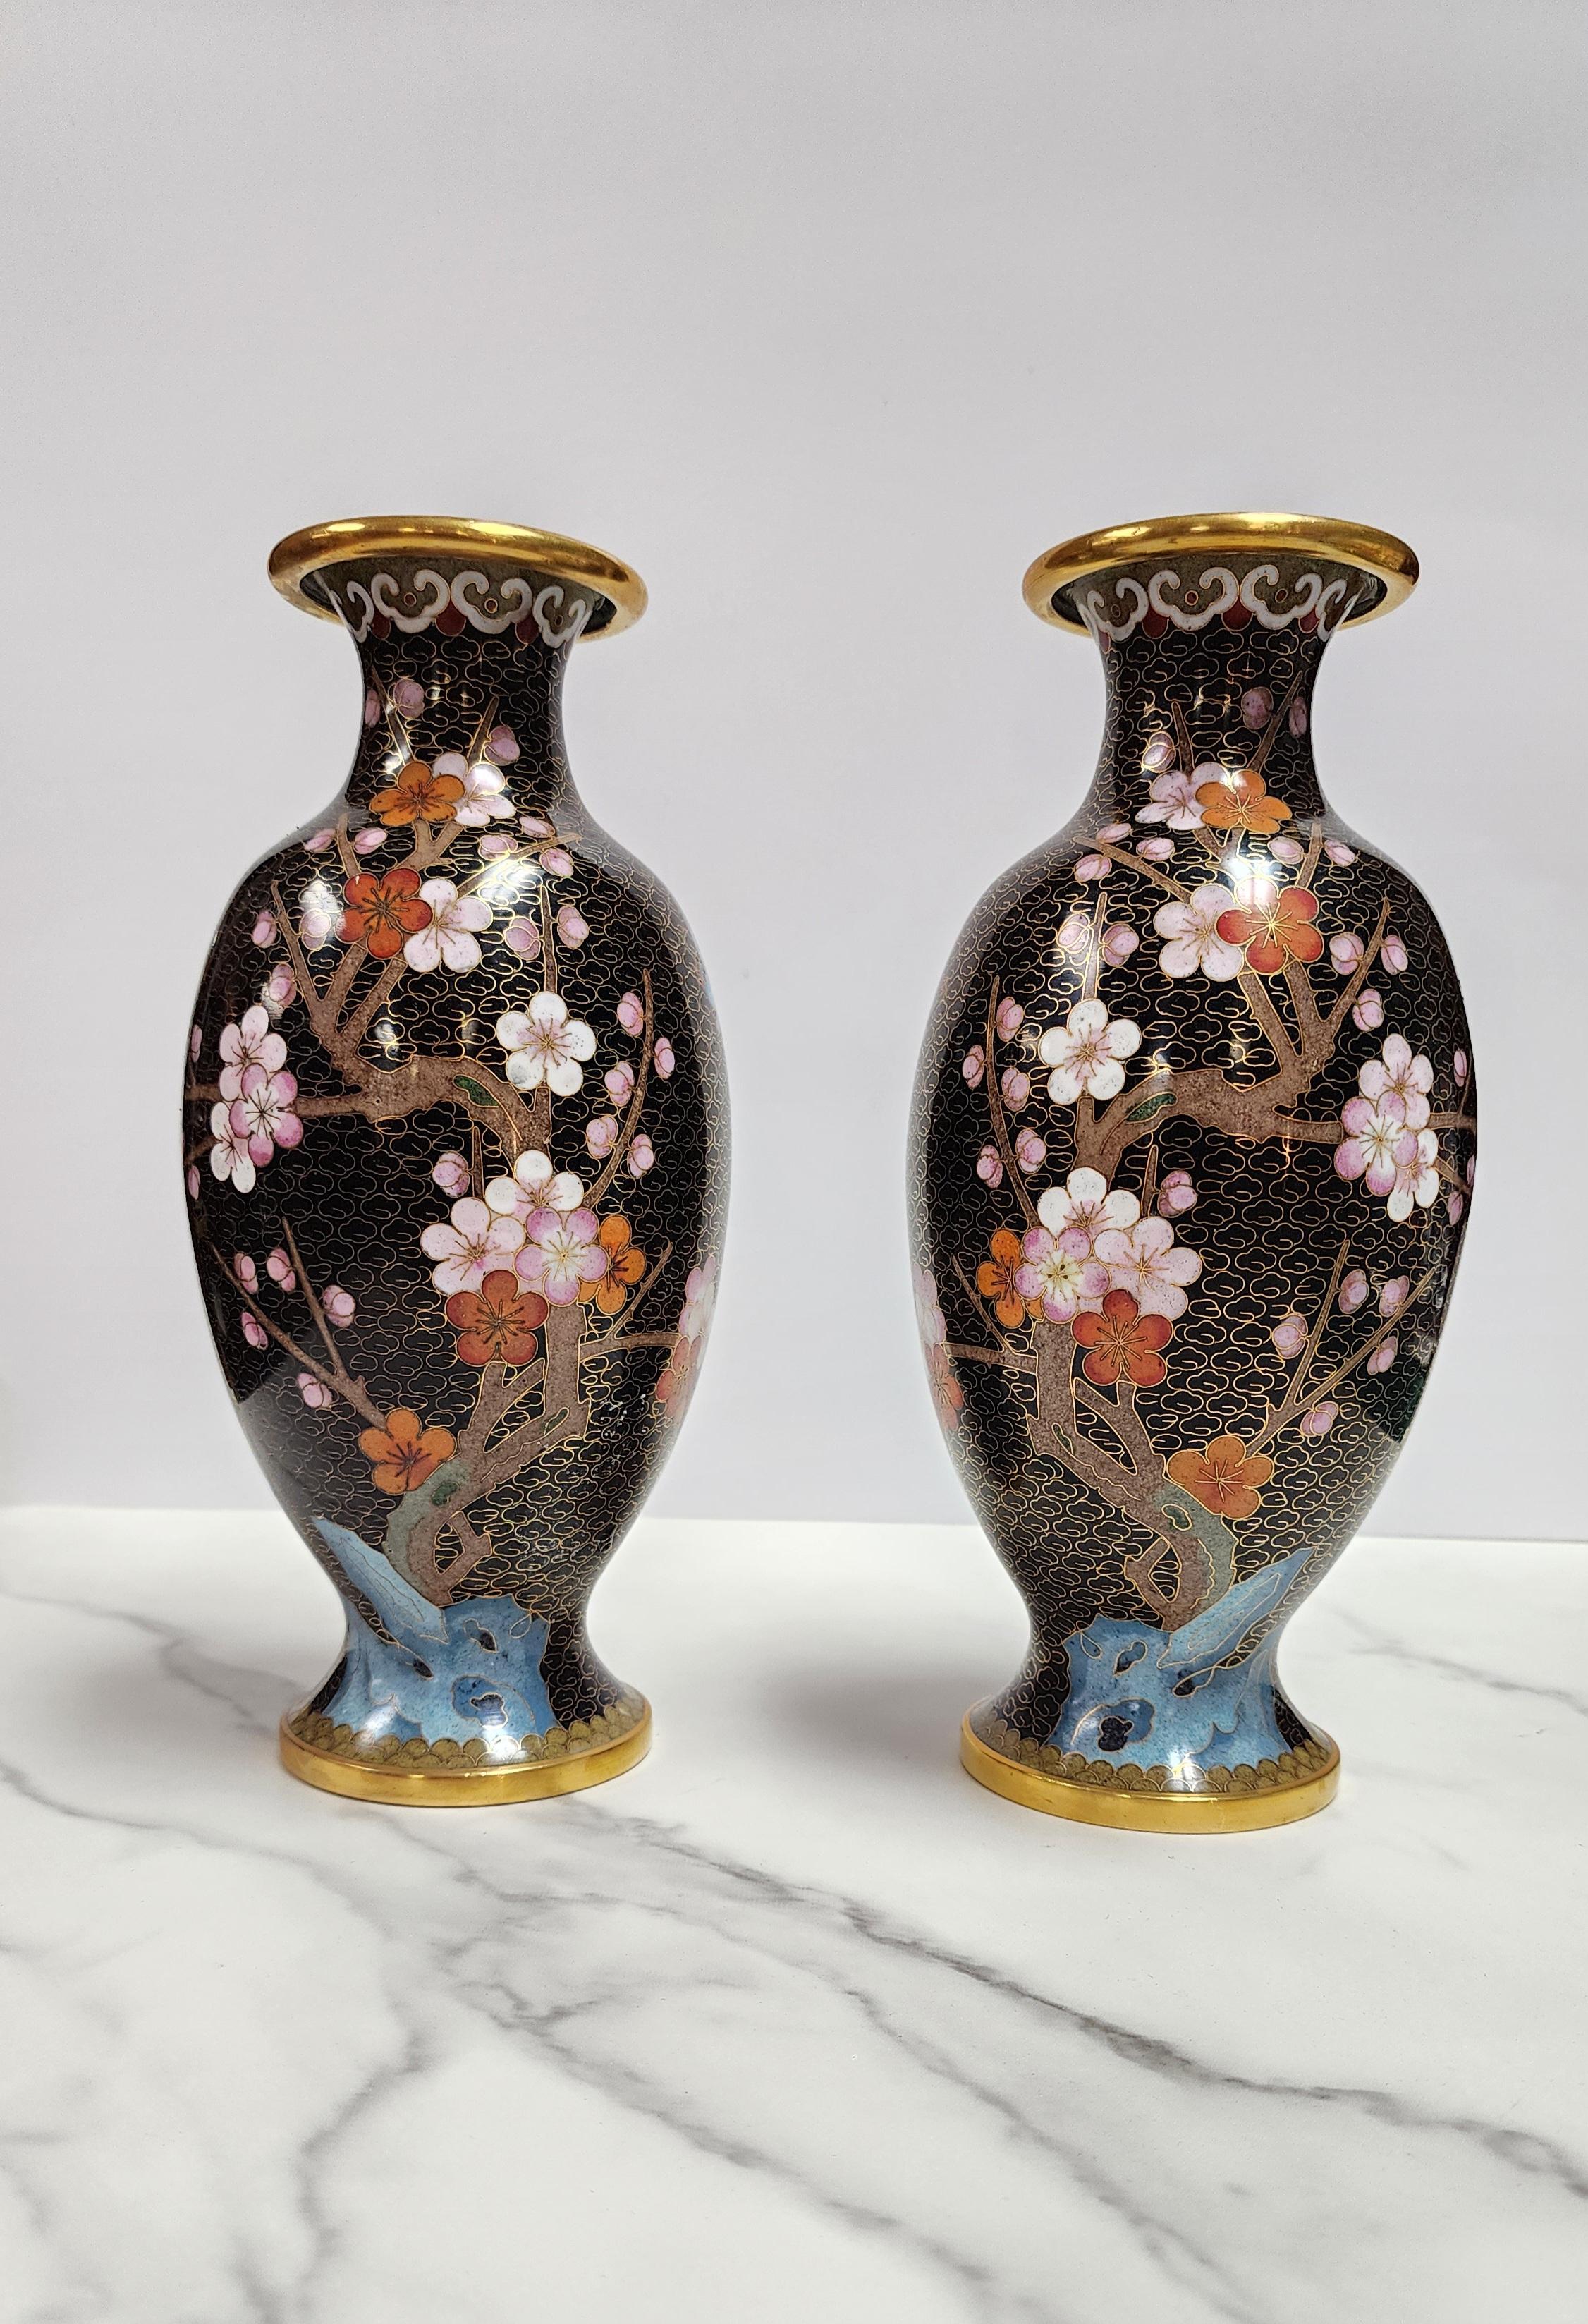 Cette rare paire de vases chinois en émail cloisonné est inhabituelle en ce sens que le motif est parfaitement reflété d'un vase à l'autre. Les motifs floraux et les oiseaux comprennent des fleurs de cerisier, une rose blanche et un oiseau bleu. Les